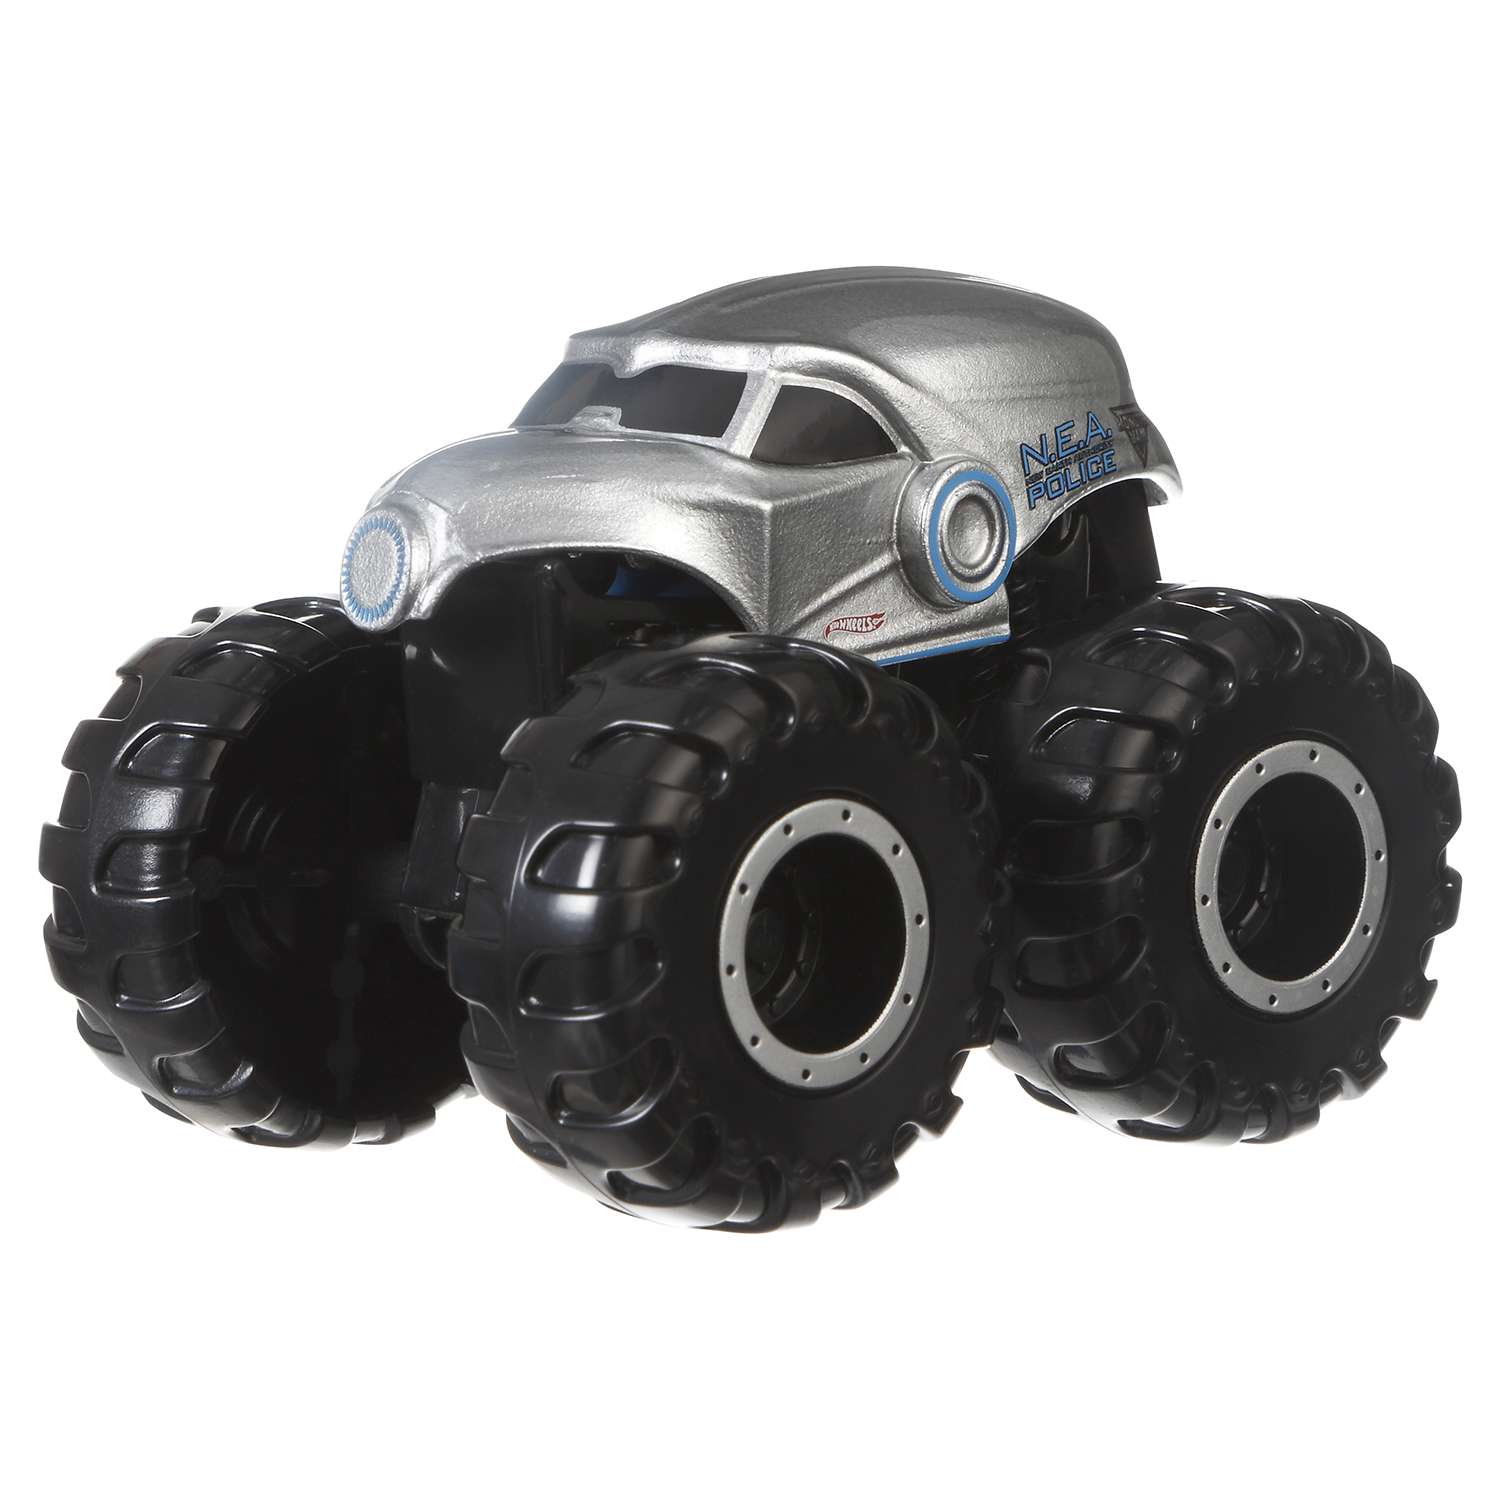 Машинки-мутанты Hot Wheels Monster Jam в ассортименте CFY42 - фото 11